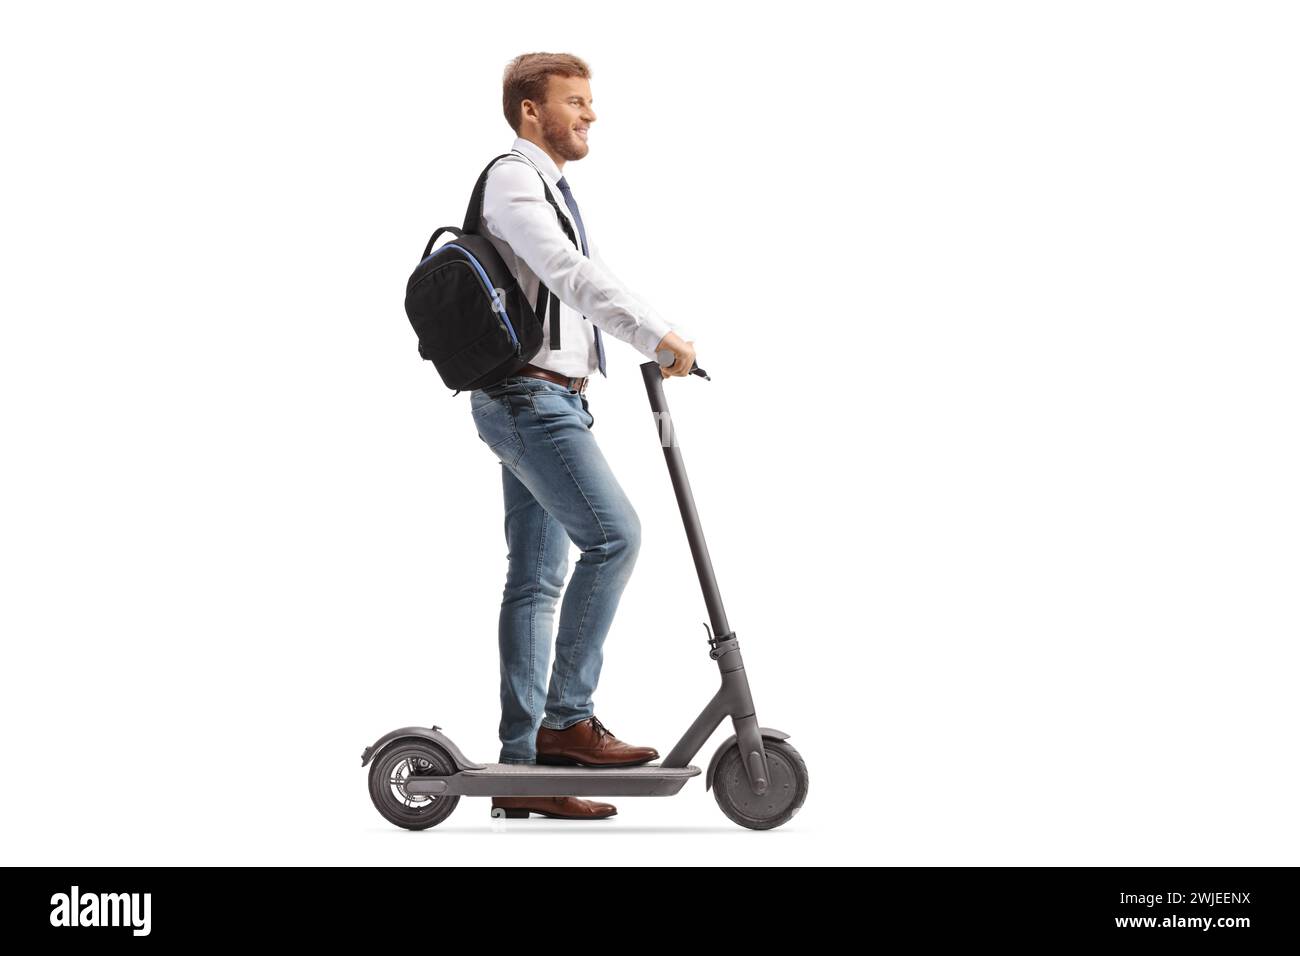 Plan de profil pleine longueur d'un homme sur un scooter électrique isolé sur fond blanc Banque D'Images